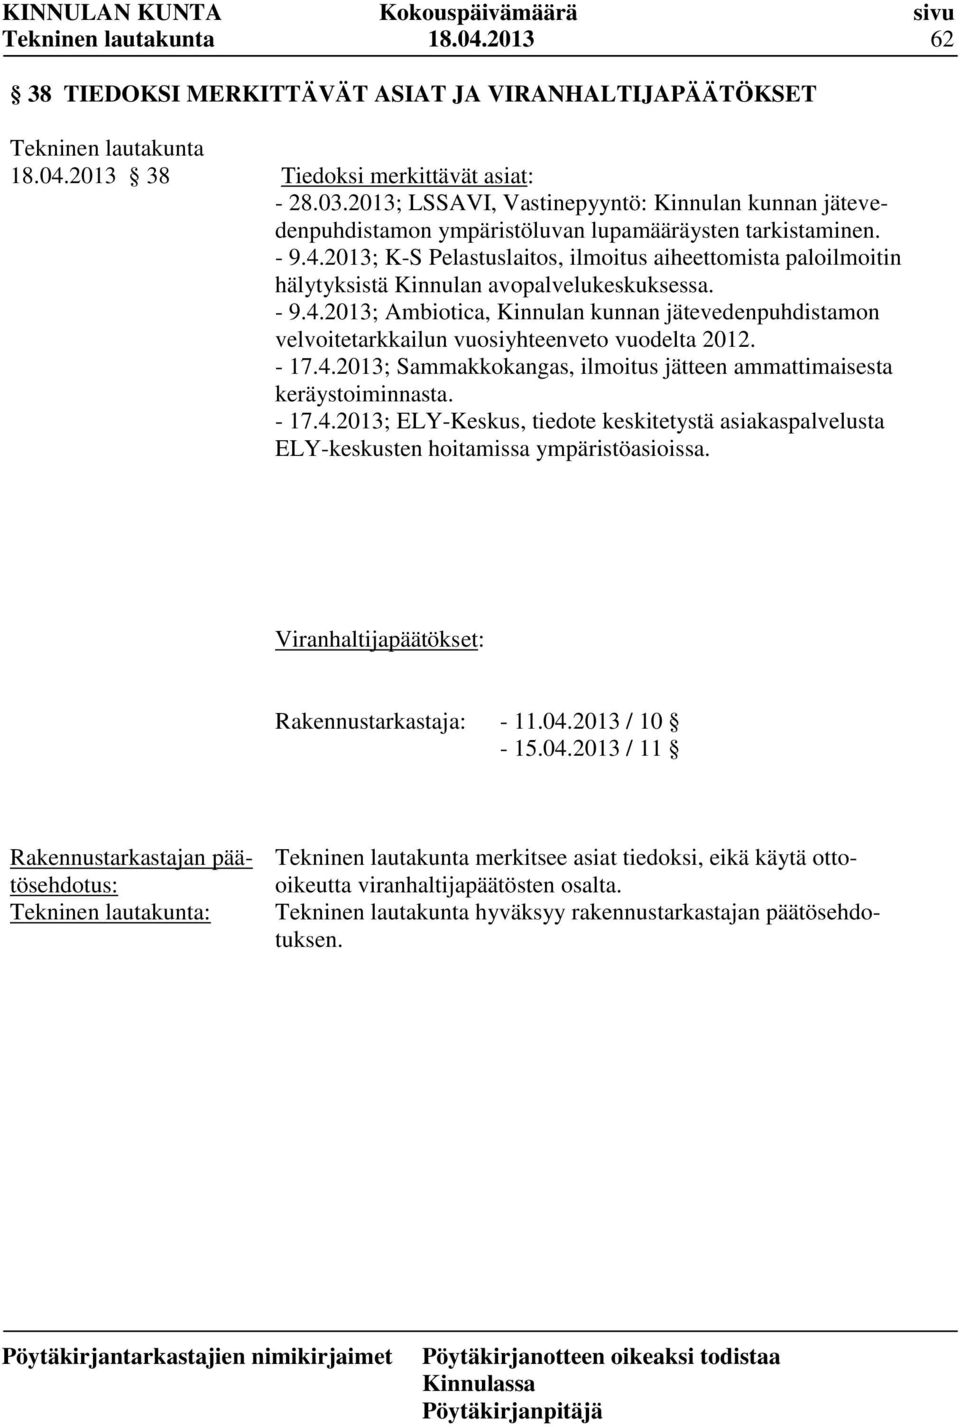 2013; K-S Pelastuslaitos, ilmoitus aiheettomista paloilmoitin hälytyksistä Kinnulan avopalvelukeskuksessa. - 9.4.